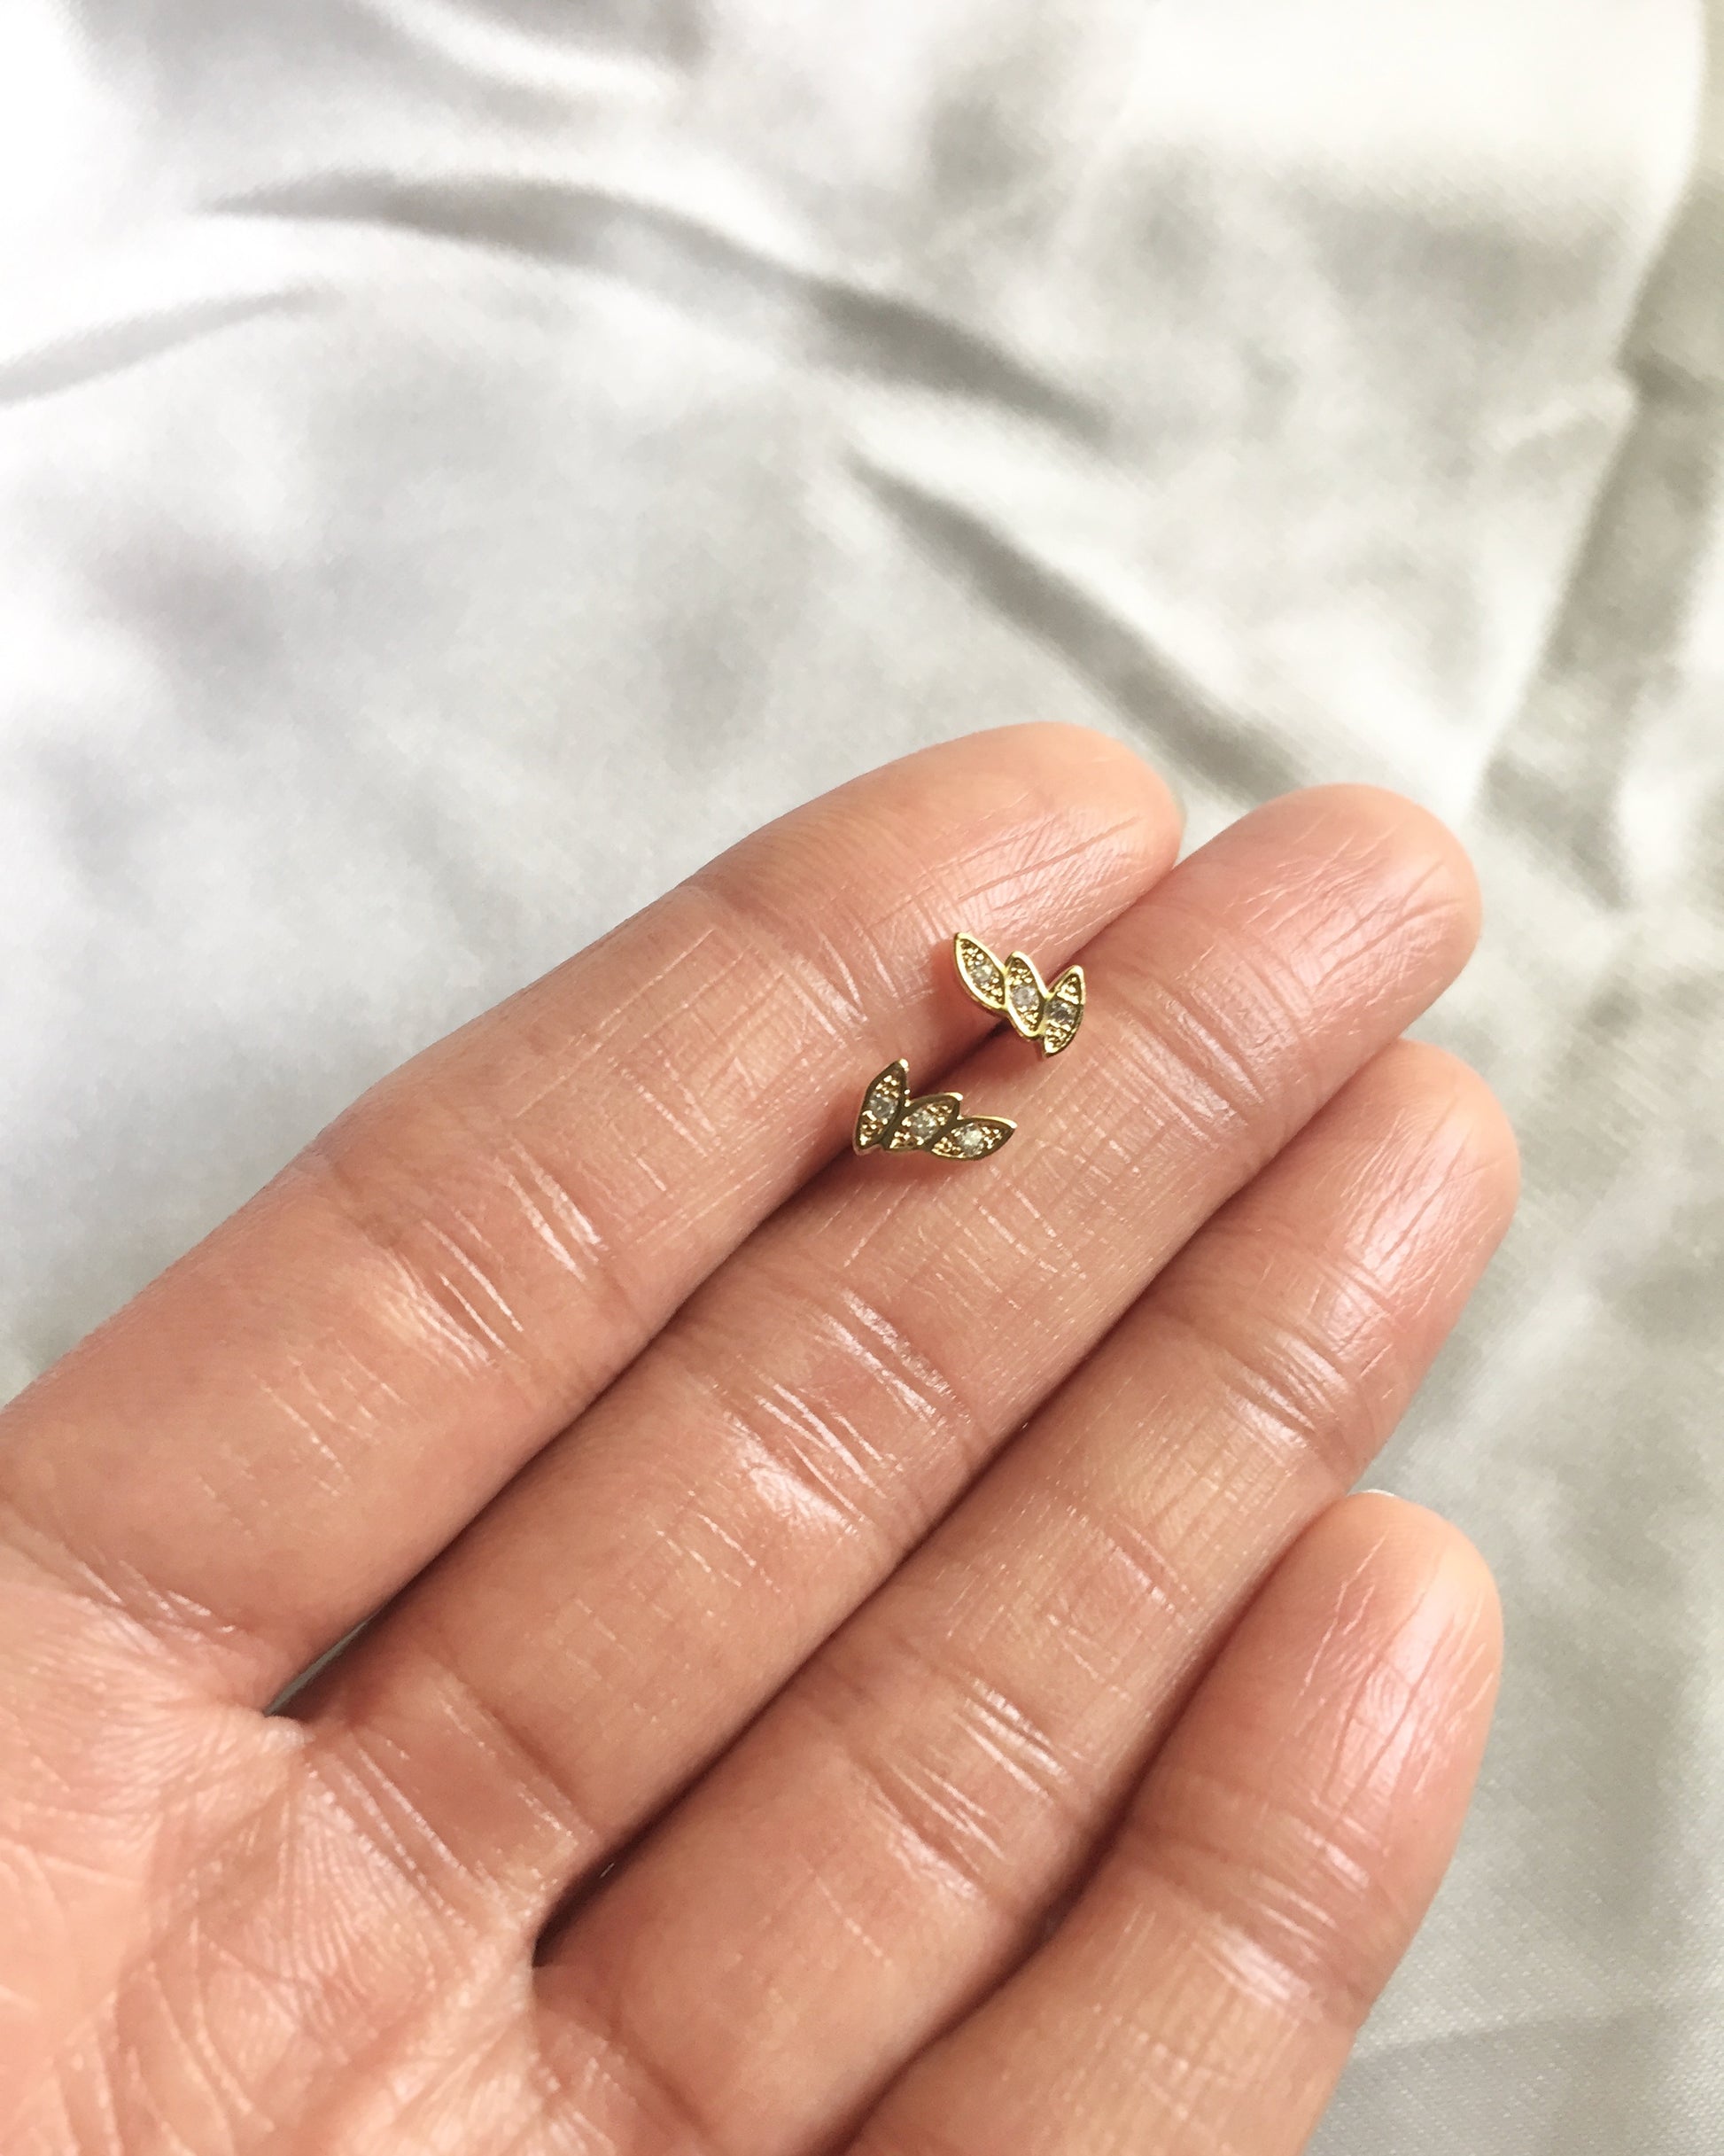 Leaf CZ Stud Earrings | Minimal Dainty Stud Earrings | Delicate Tiny Stud Earrings | IB Jewelry